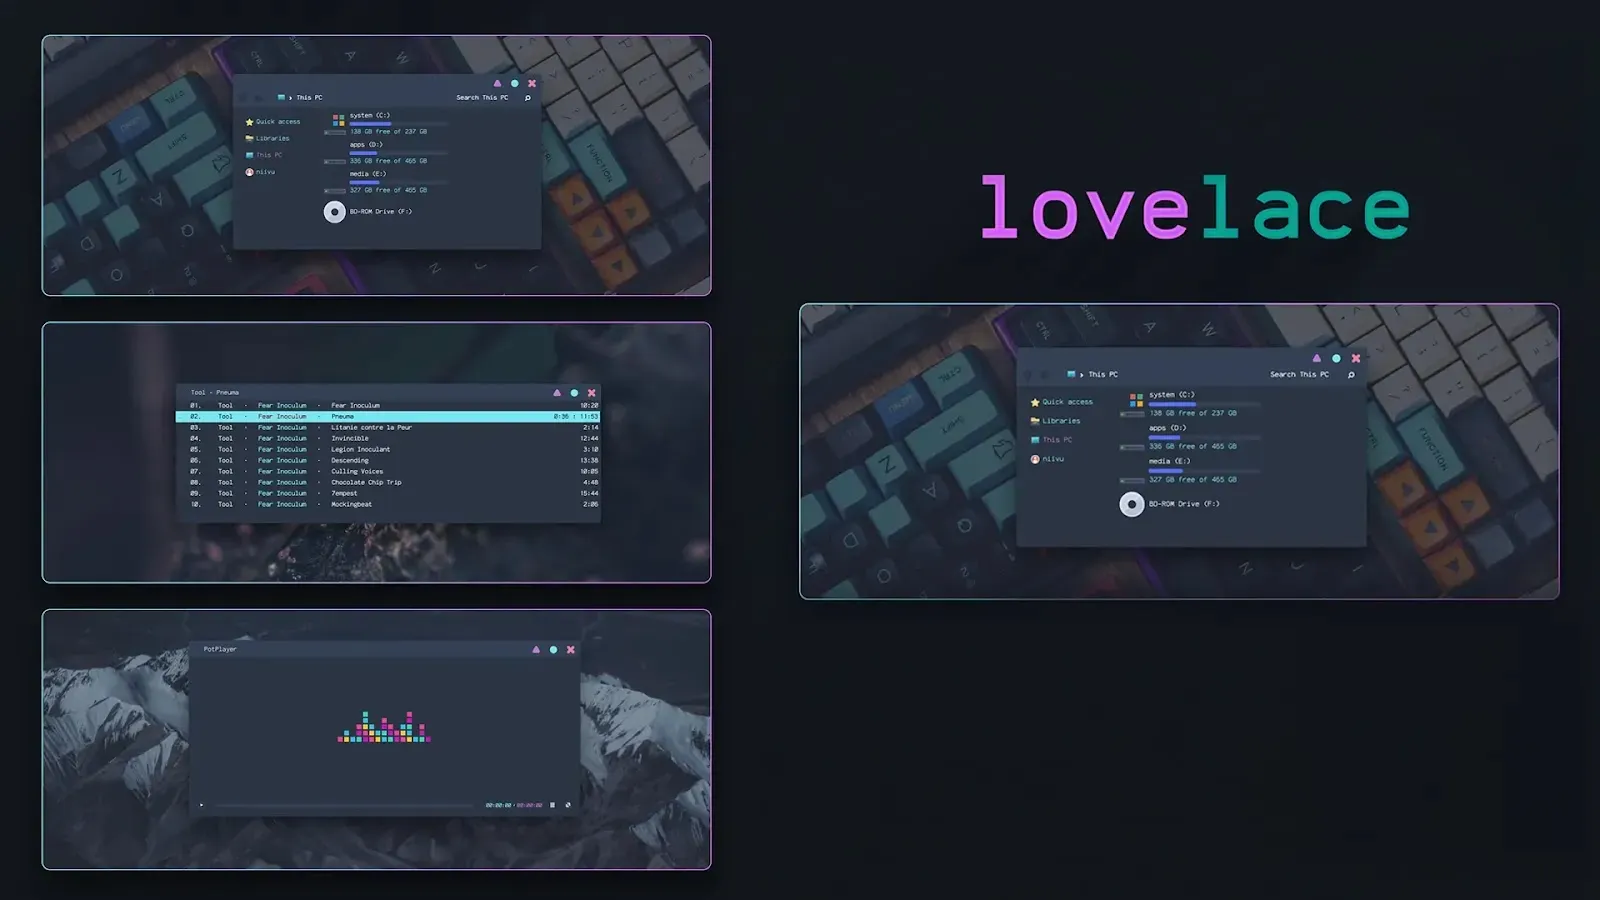 Lovelace Theme For Windows 10